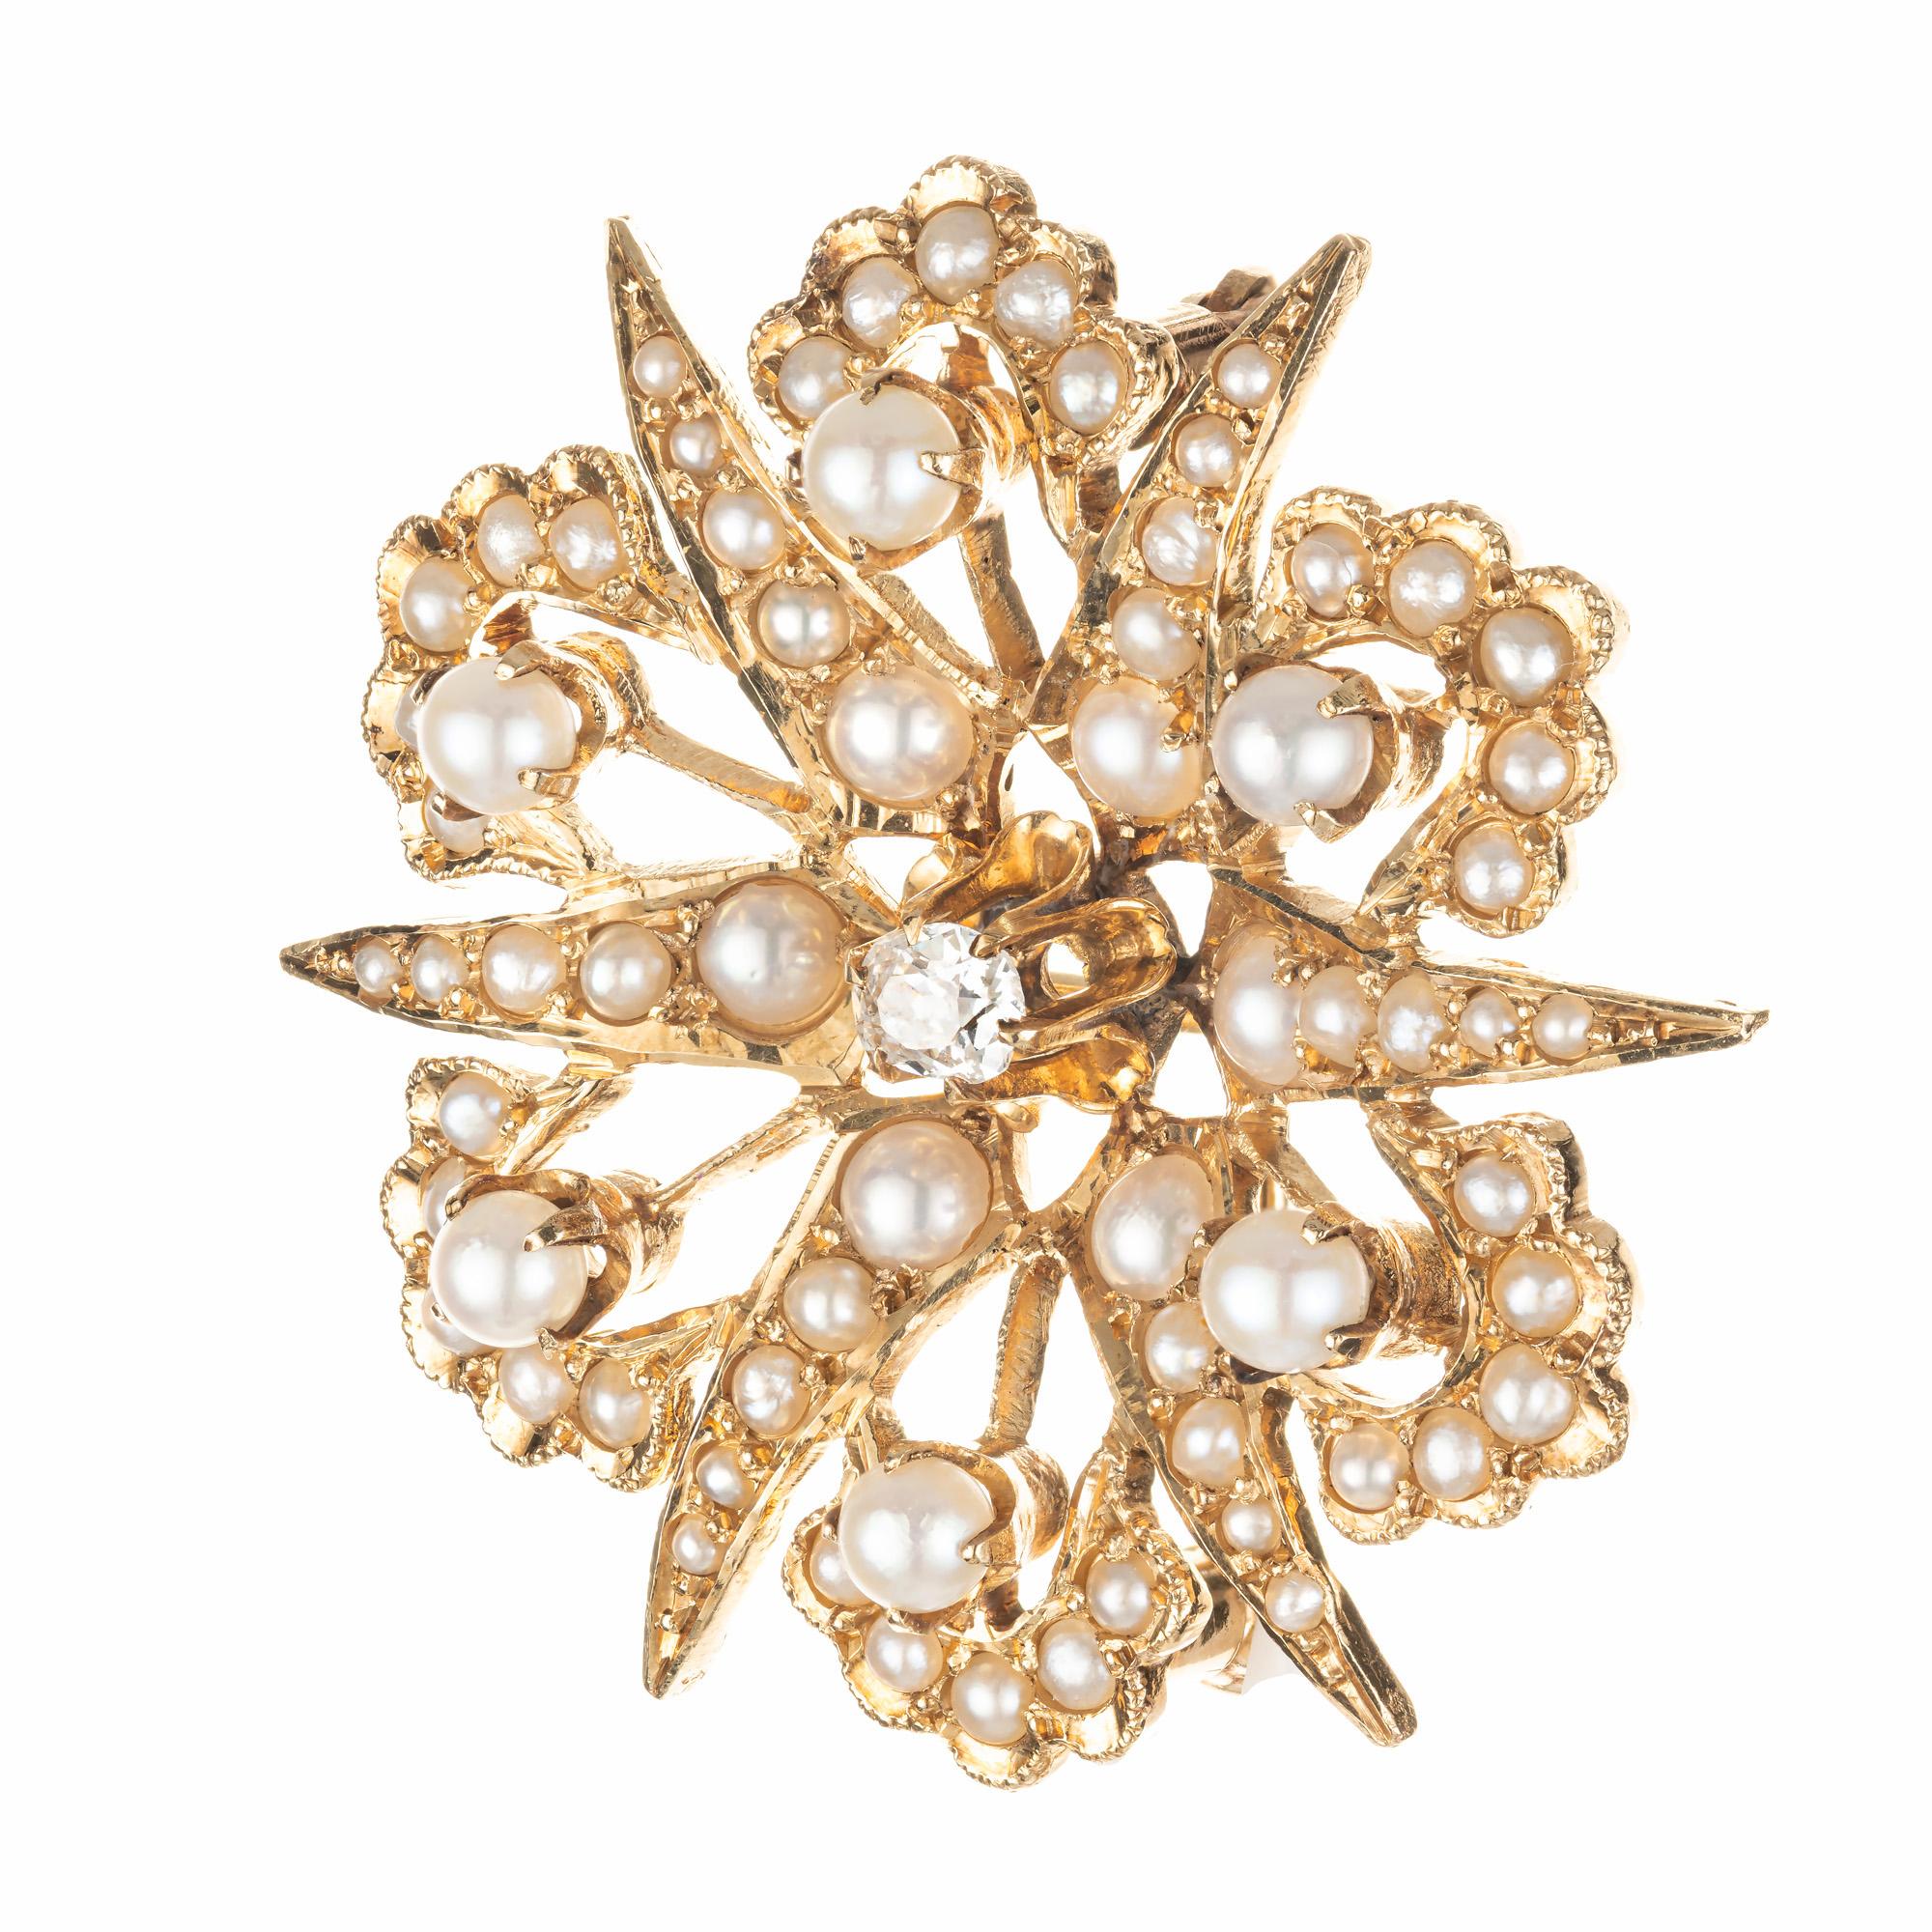 Pendentif broche en perles naturelles et diamants taillés en coussin, datant du début du siècle. un diamant central de taille ancienne serti dans de l'or rose 14 carats avec 66 perles blanches et grises

6 perles blanches/grises, 3.2mm
60 perles de